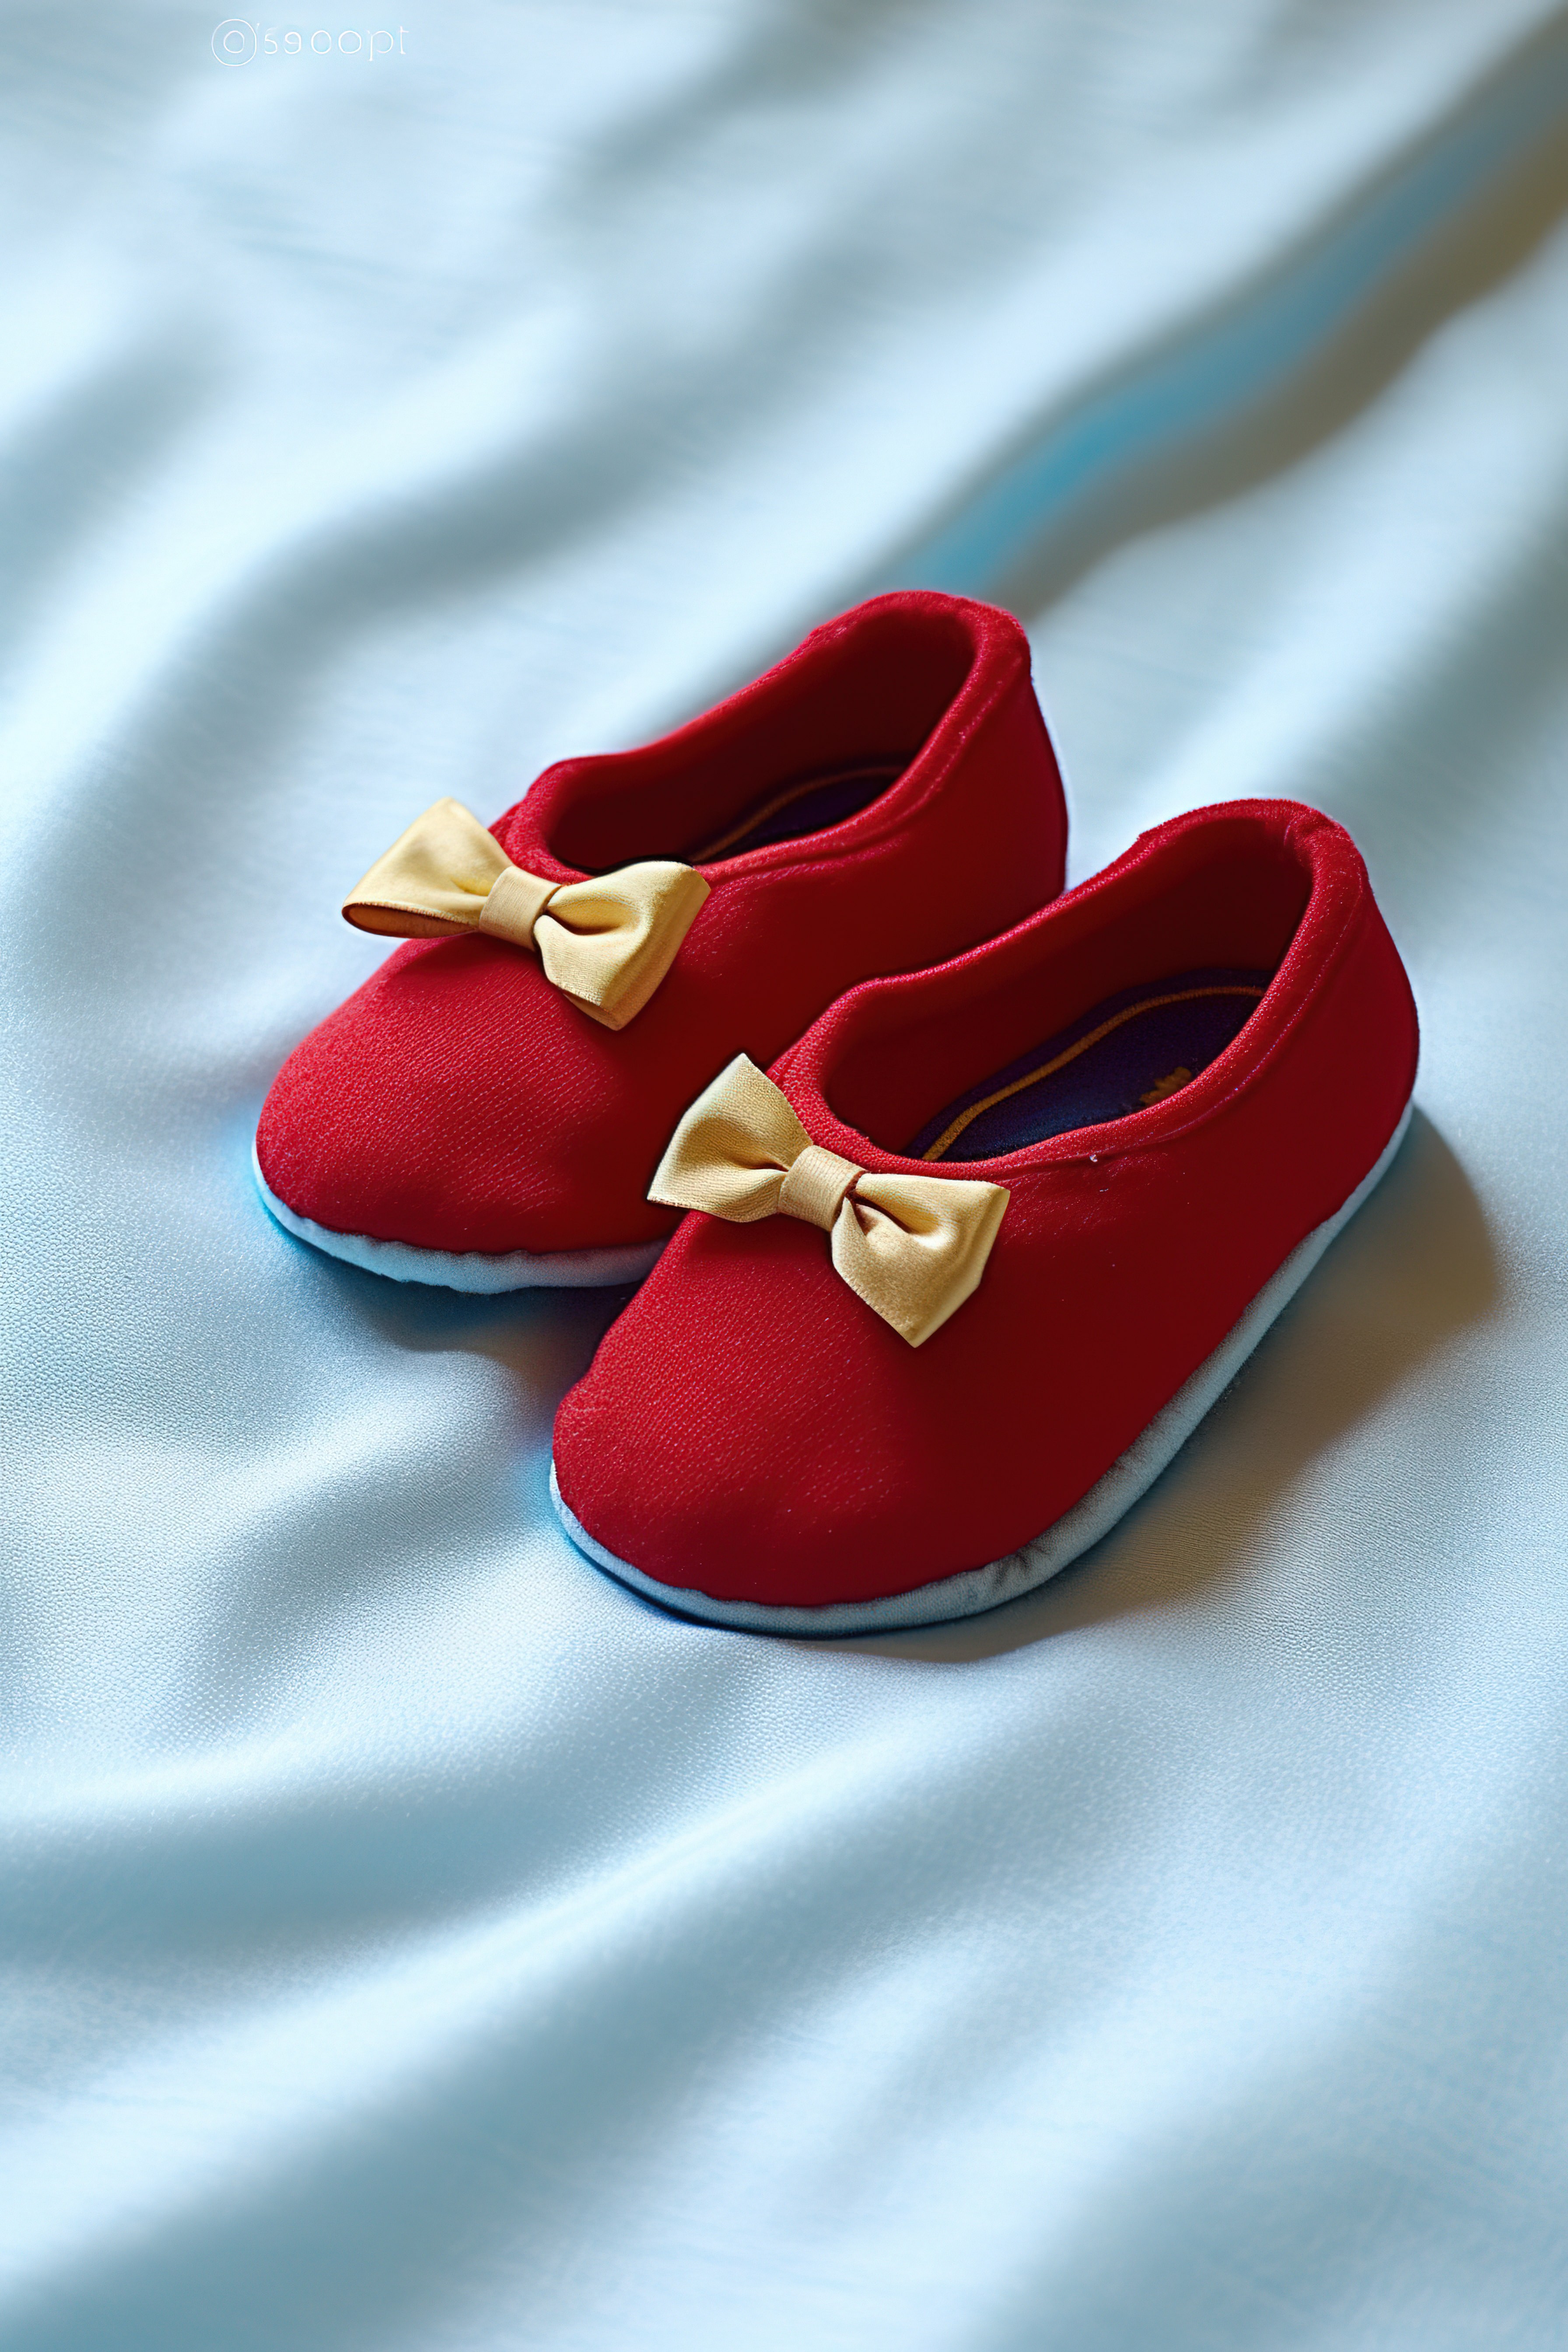 白色床单下放着一双带红色领结的婴儿拖鞋图片